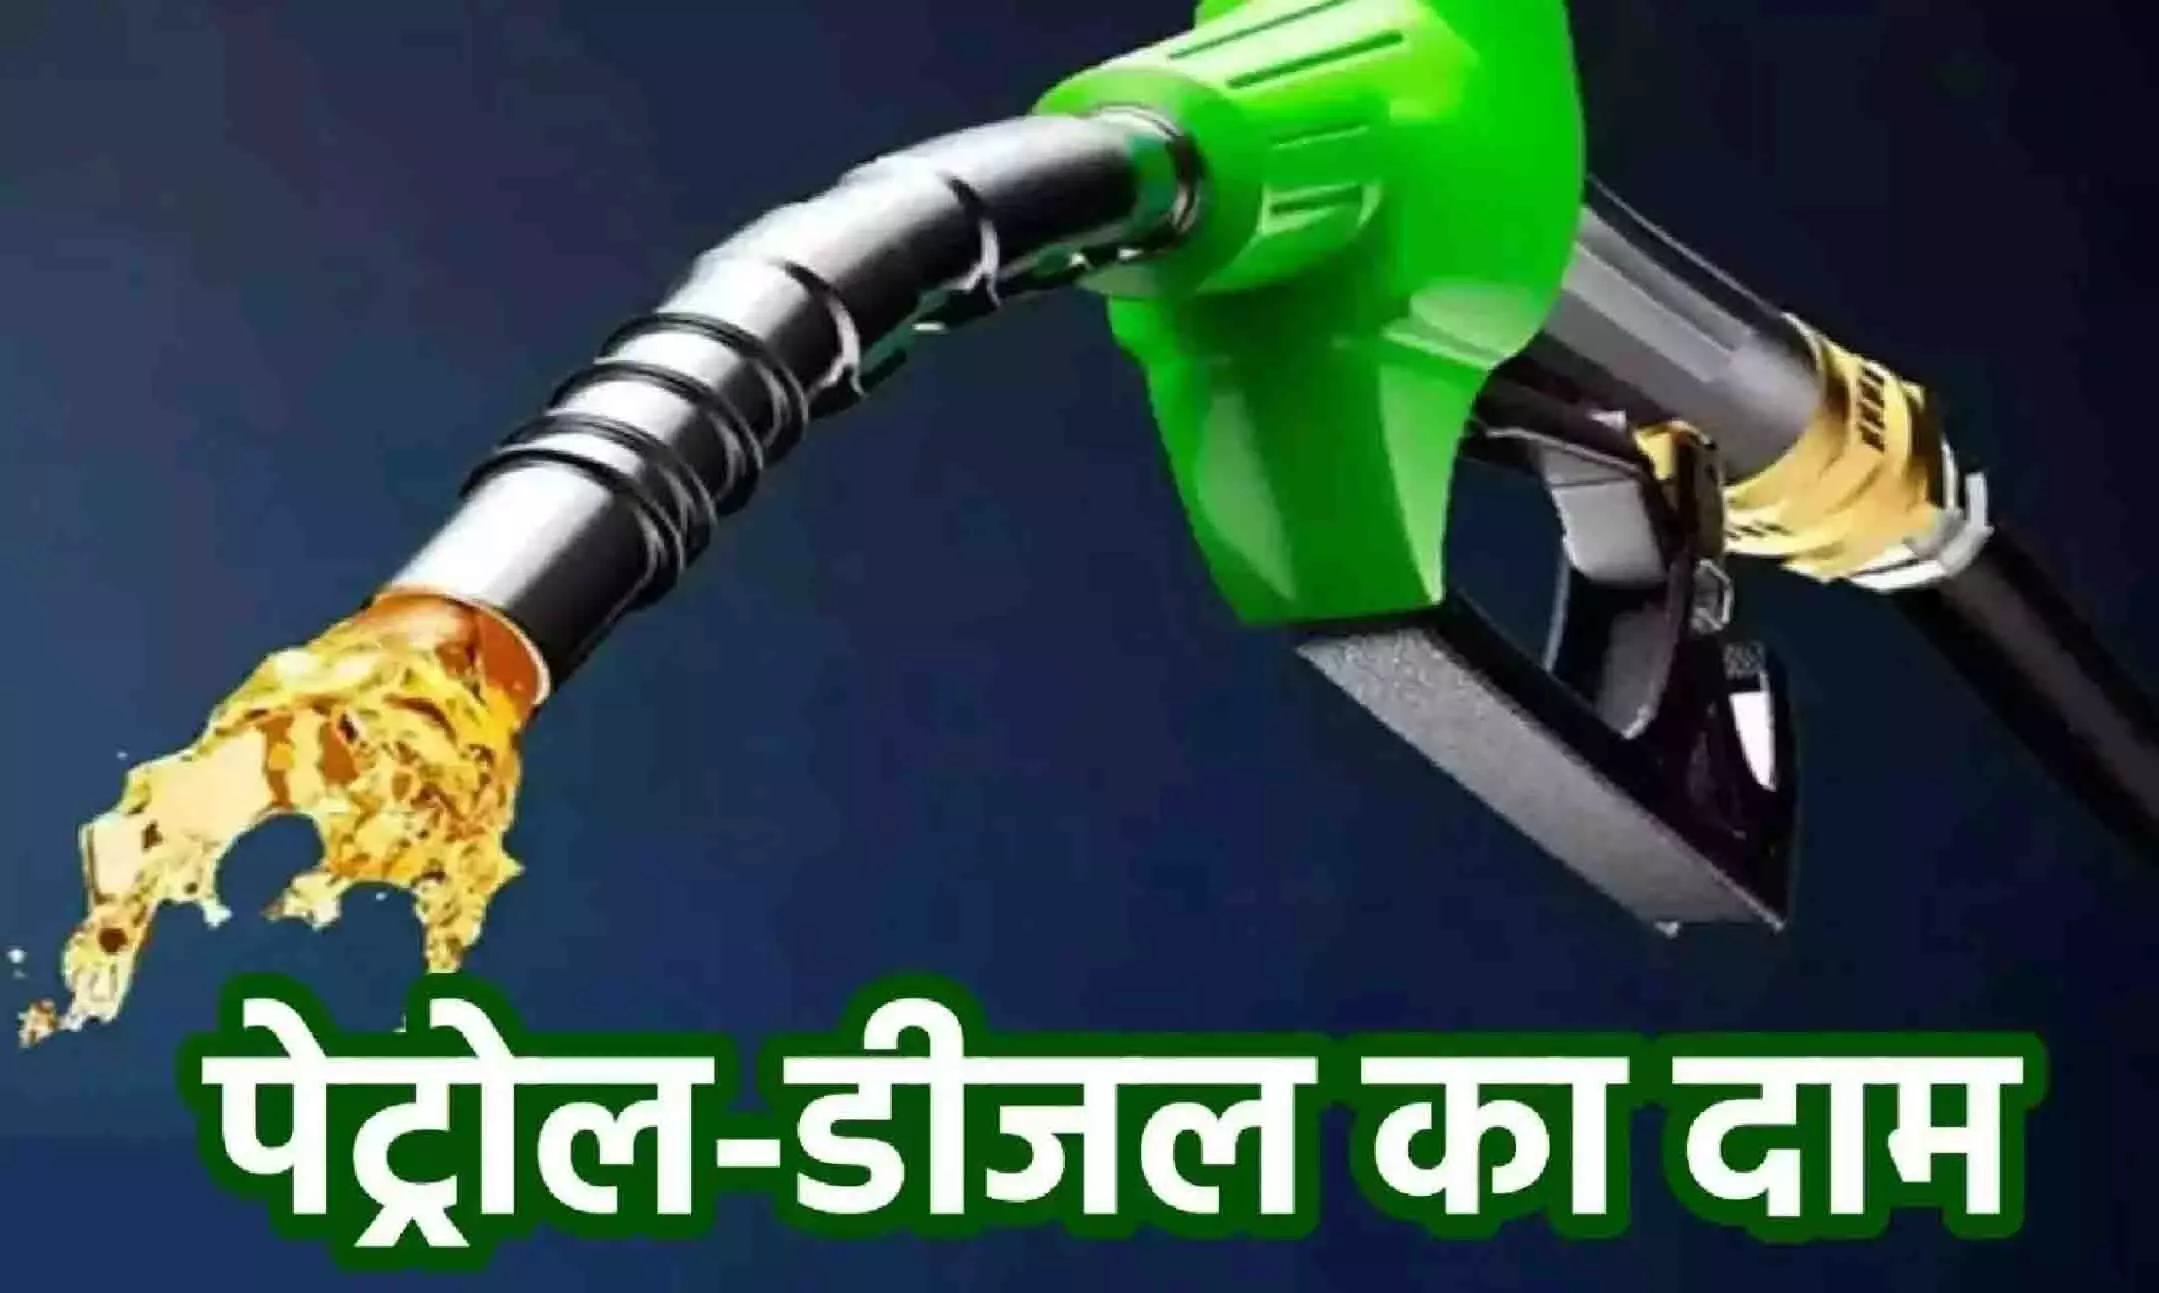 Petrol-Diesel Price: सस्ता हो गया पेट्रोल-डीजल, केंद्र सरकार ने की 10 से ज्यादा रुपये की कटौती